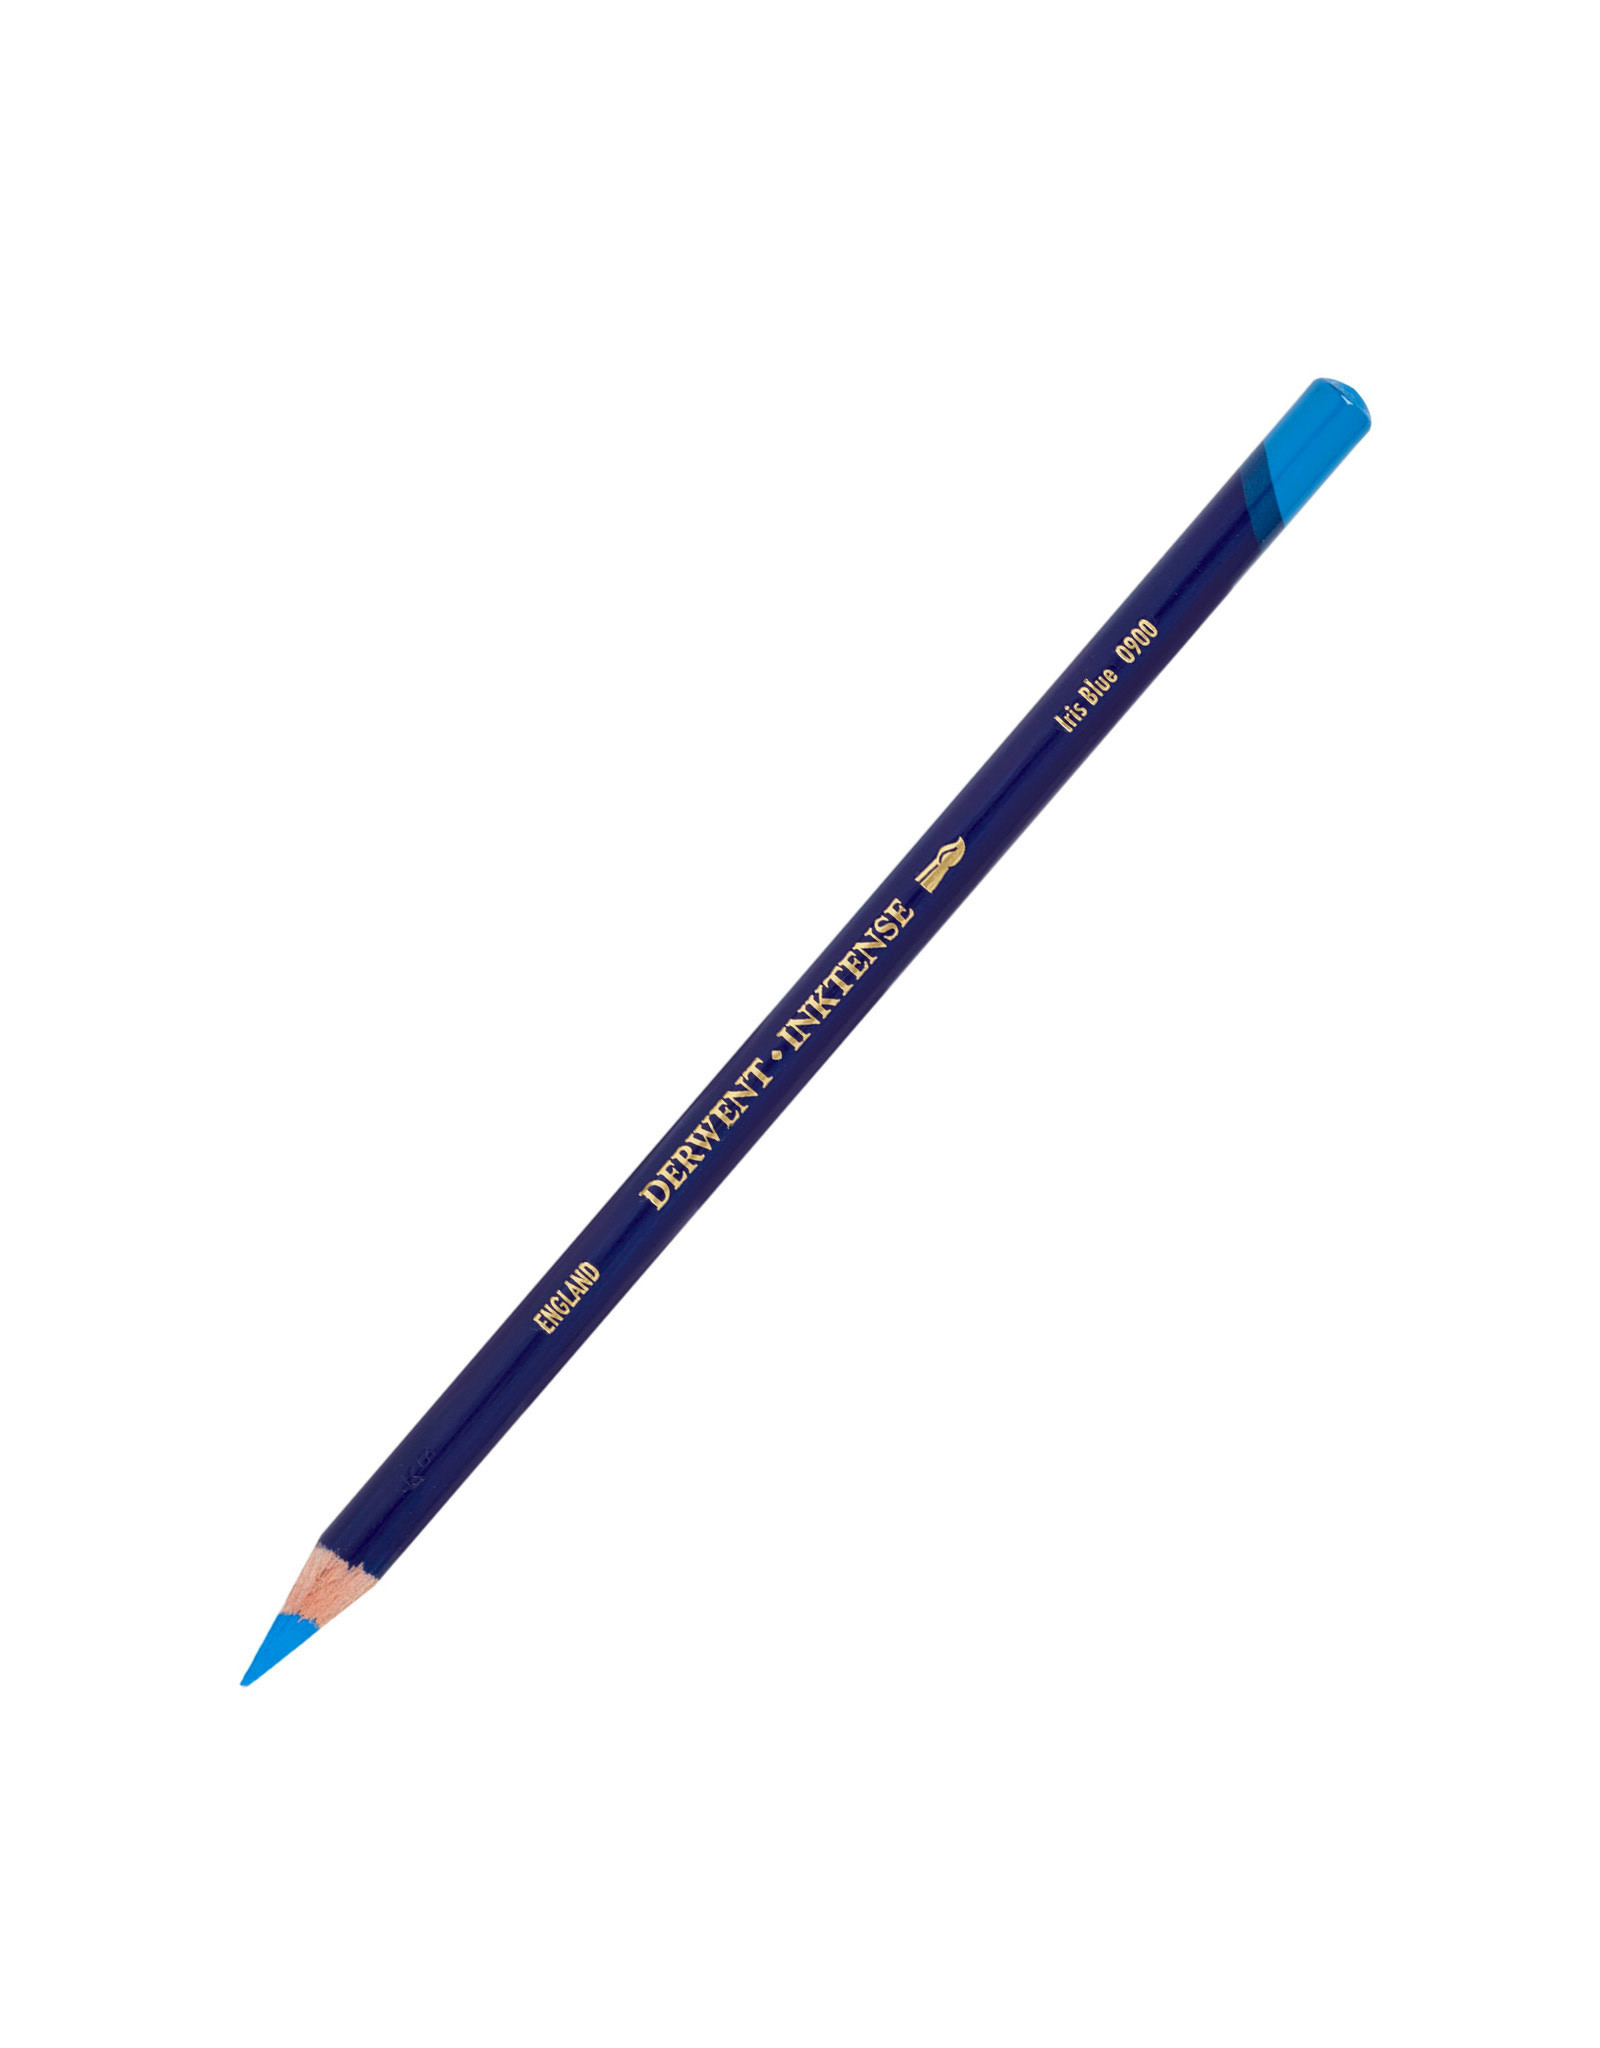 Derwent Derwent Inktense Pencil, Iris Blue